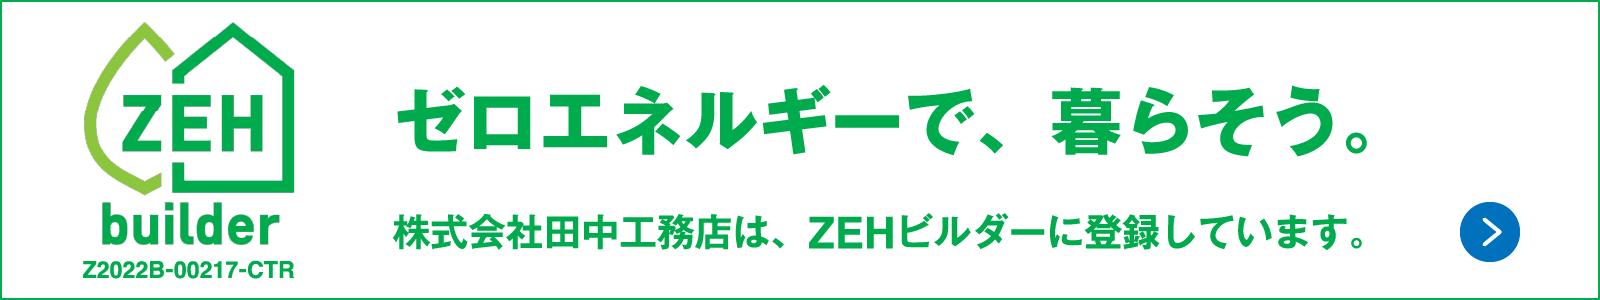 田中工務店のZEH